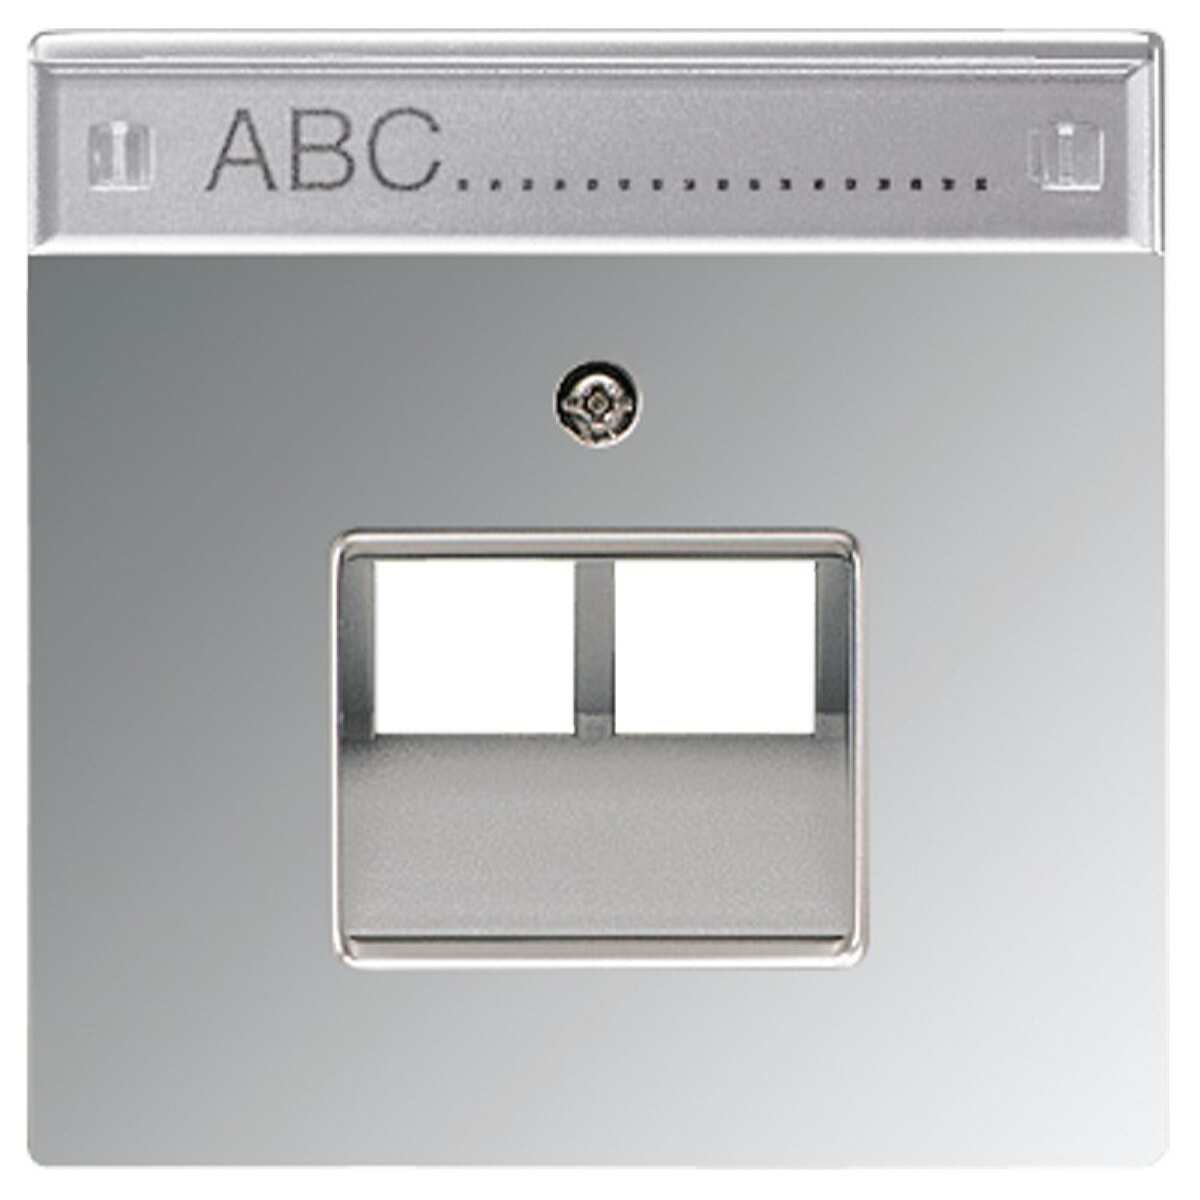 Jung Abdeckung für IAE/UAE-Anschlussdosen 2 x 8-polig, mit Schriftfeld, Metall verchromt, Serie LS, glanzchrom GCR2969-2NAUA